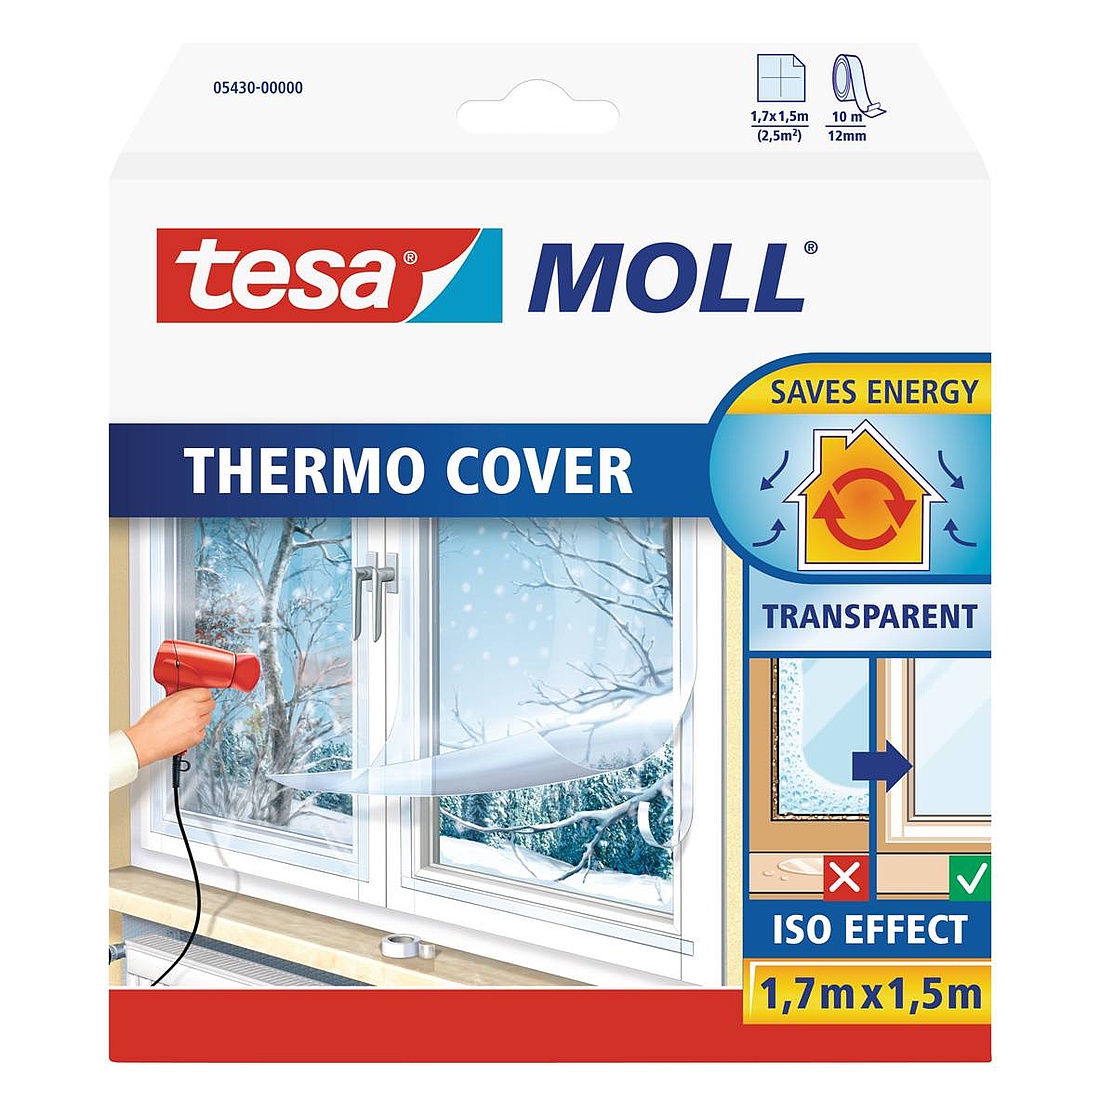 Die transparente tesamoll Thermo Cover Fensterisolierfolie erzeugt ein wärmedämmendes Luftpolster, das wie eine zusätzliche Fensterscheibe wirkt. (Grafik: tesa SE)